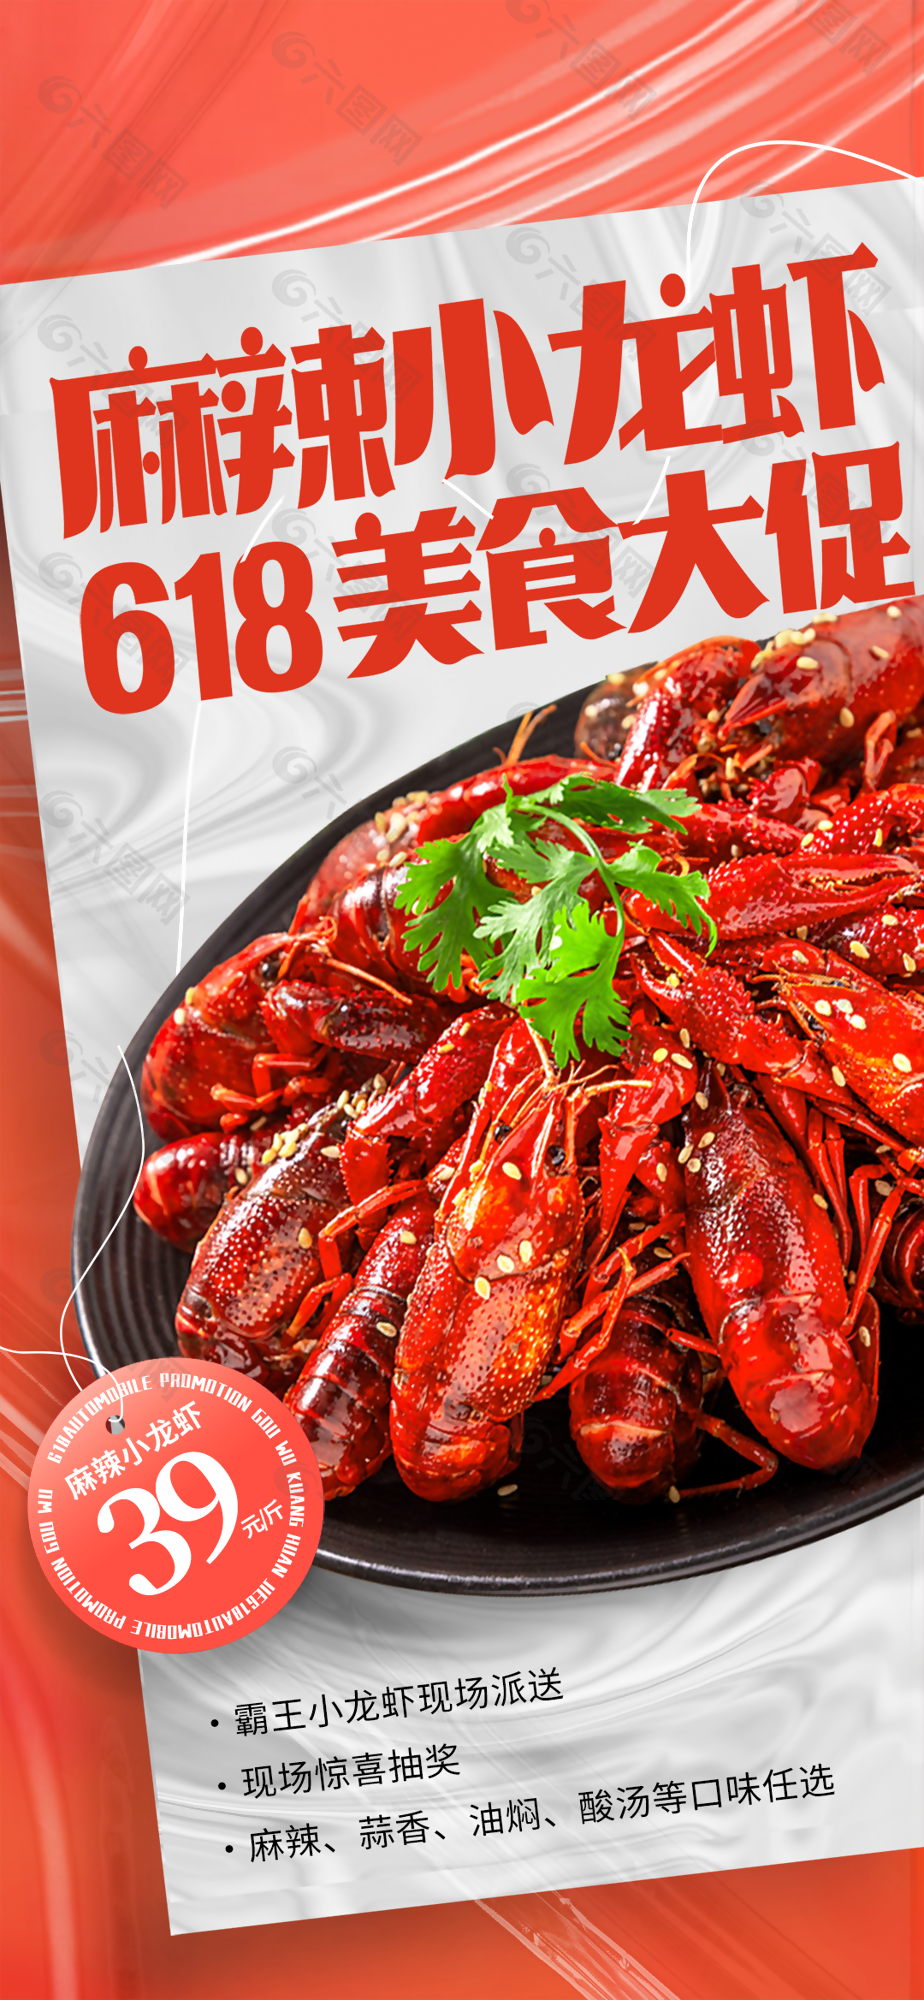 618麻辣小龙虾美食大促海报设计